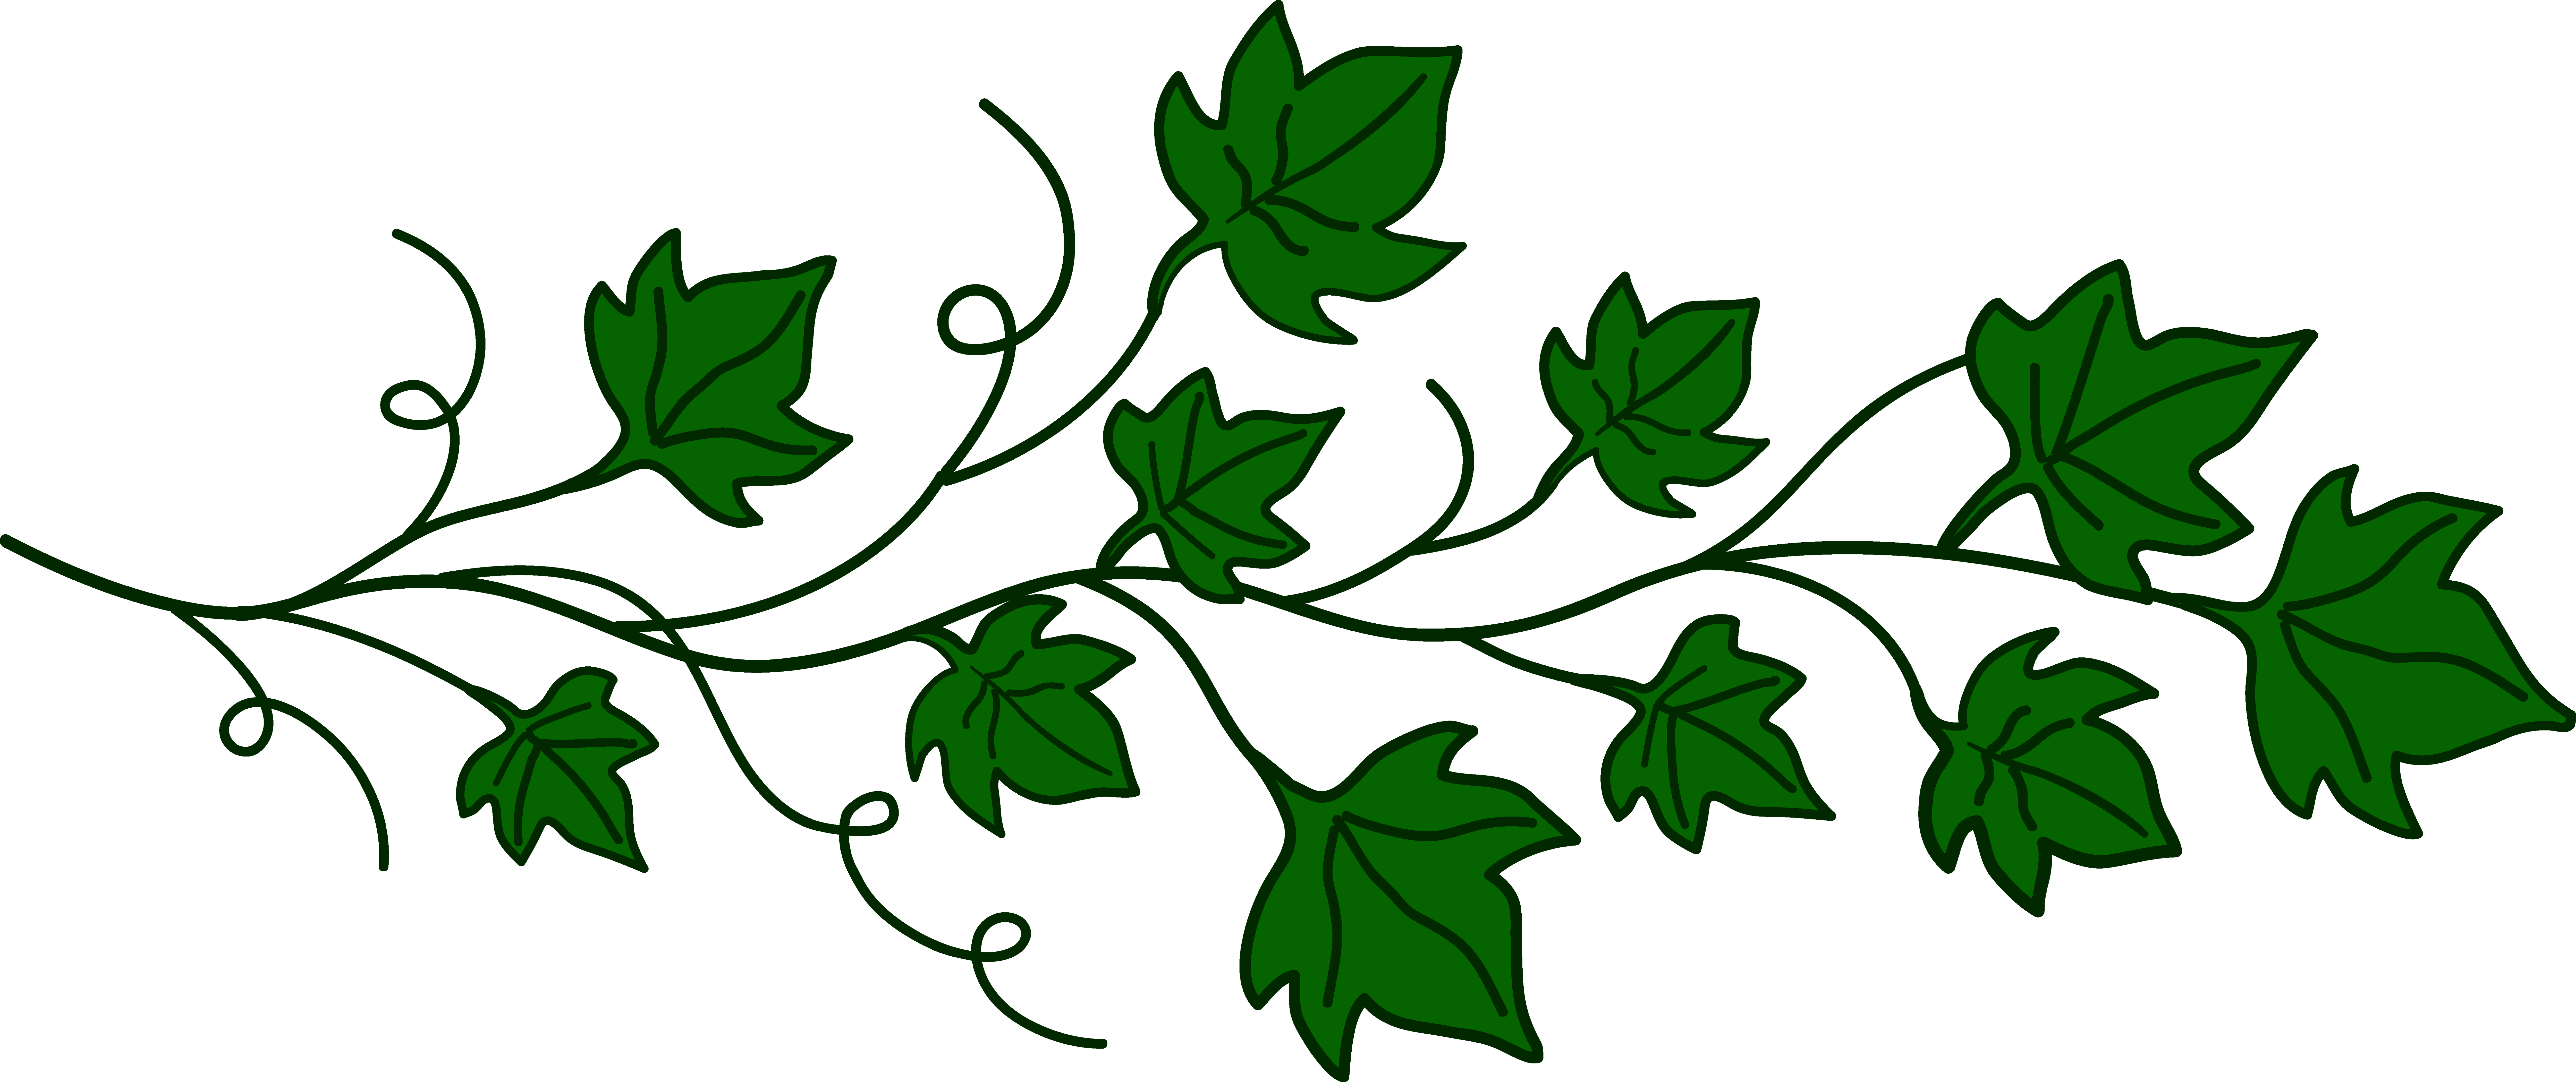 Leaves Cartoon